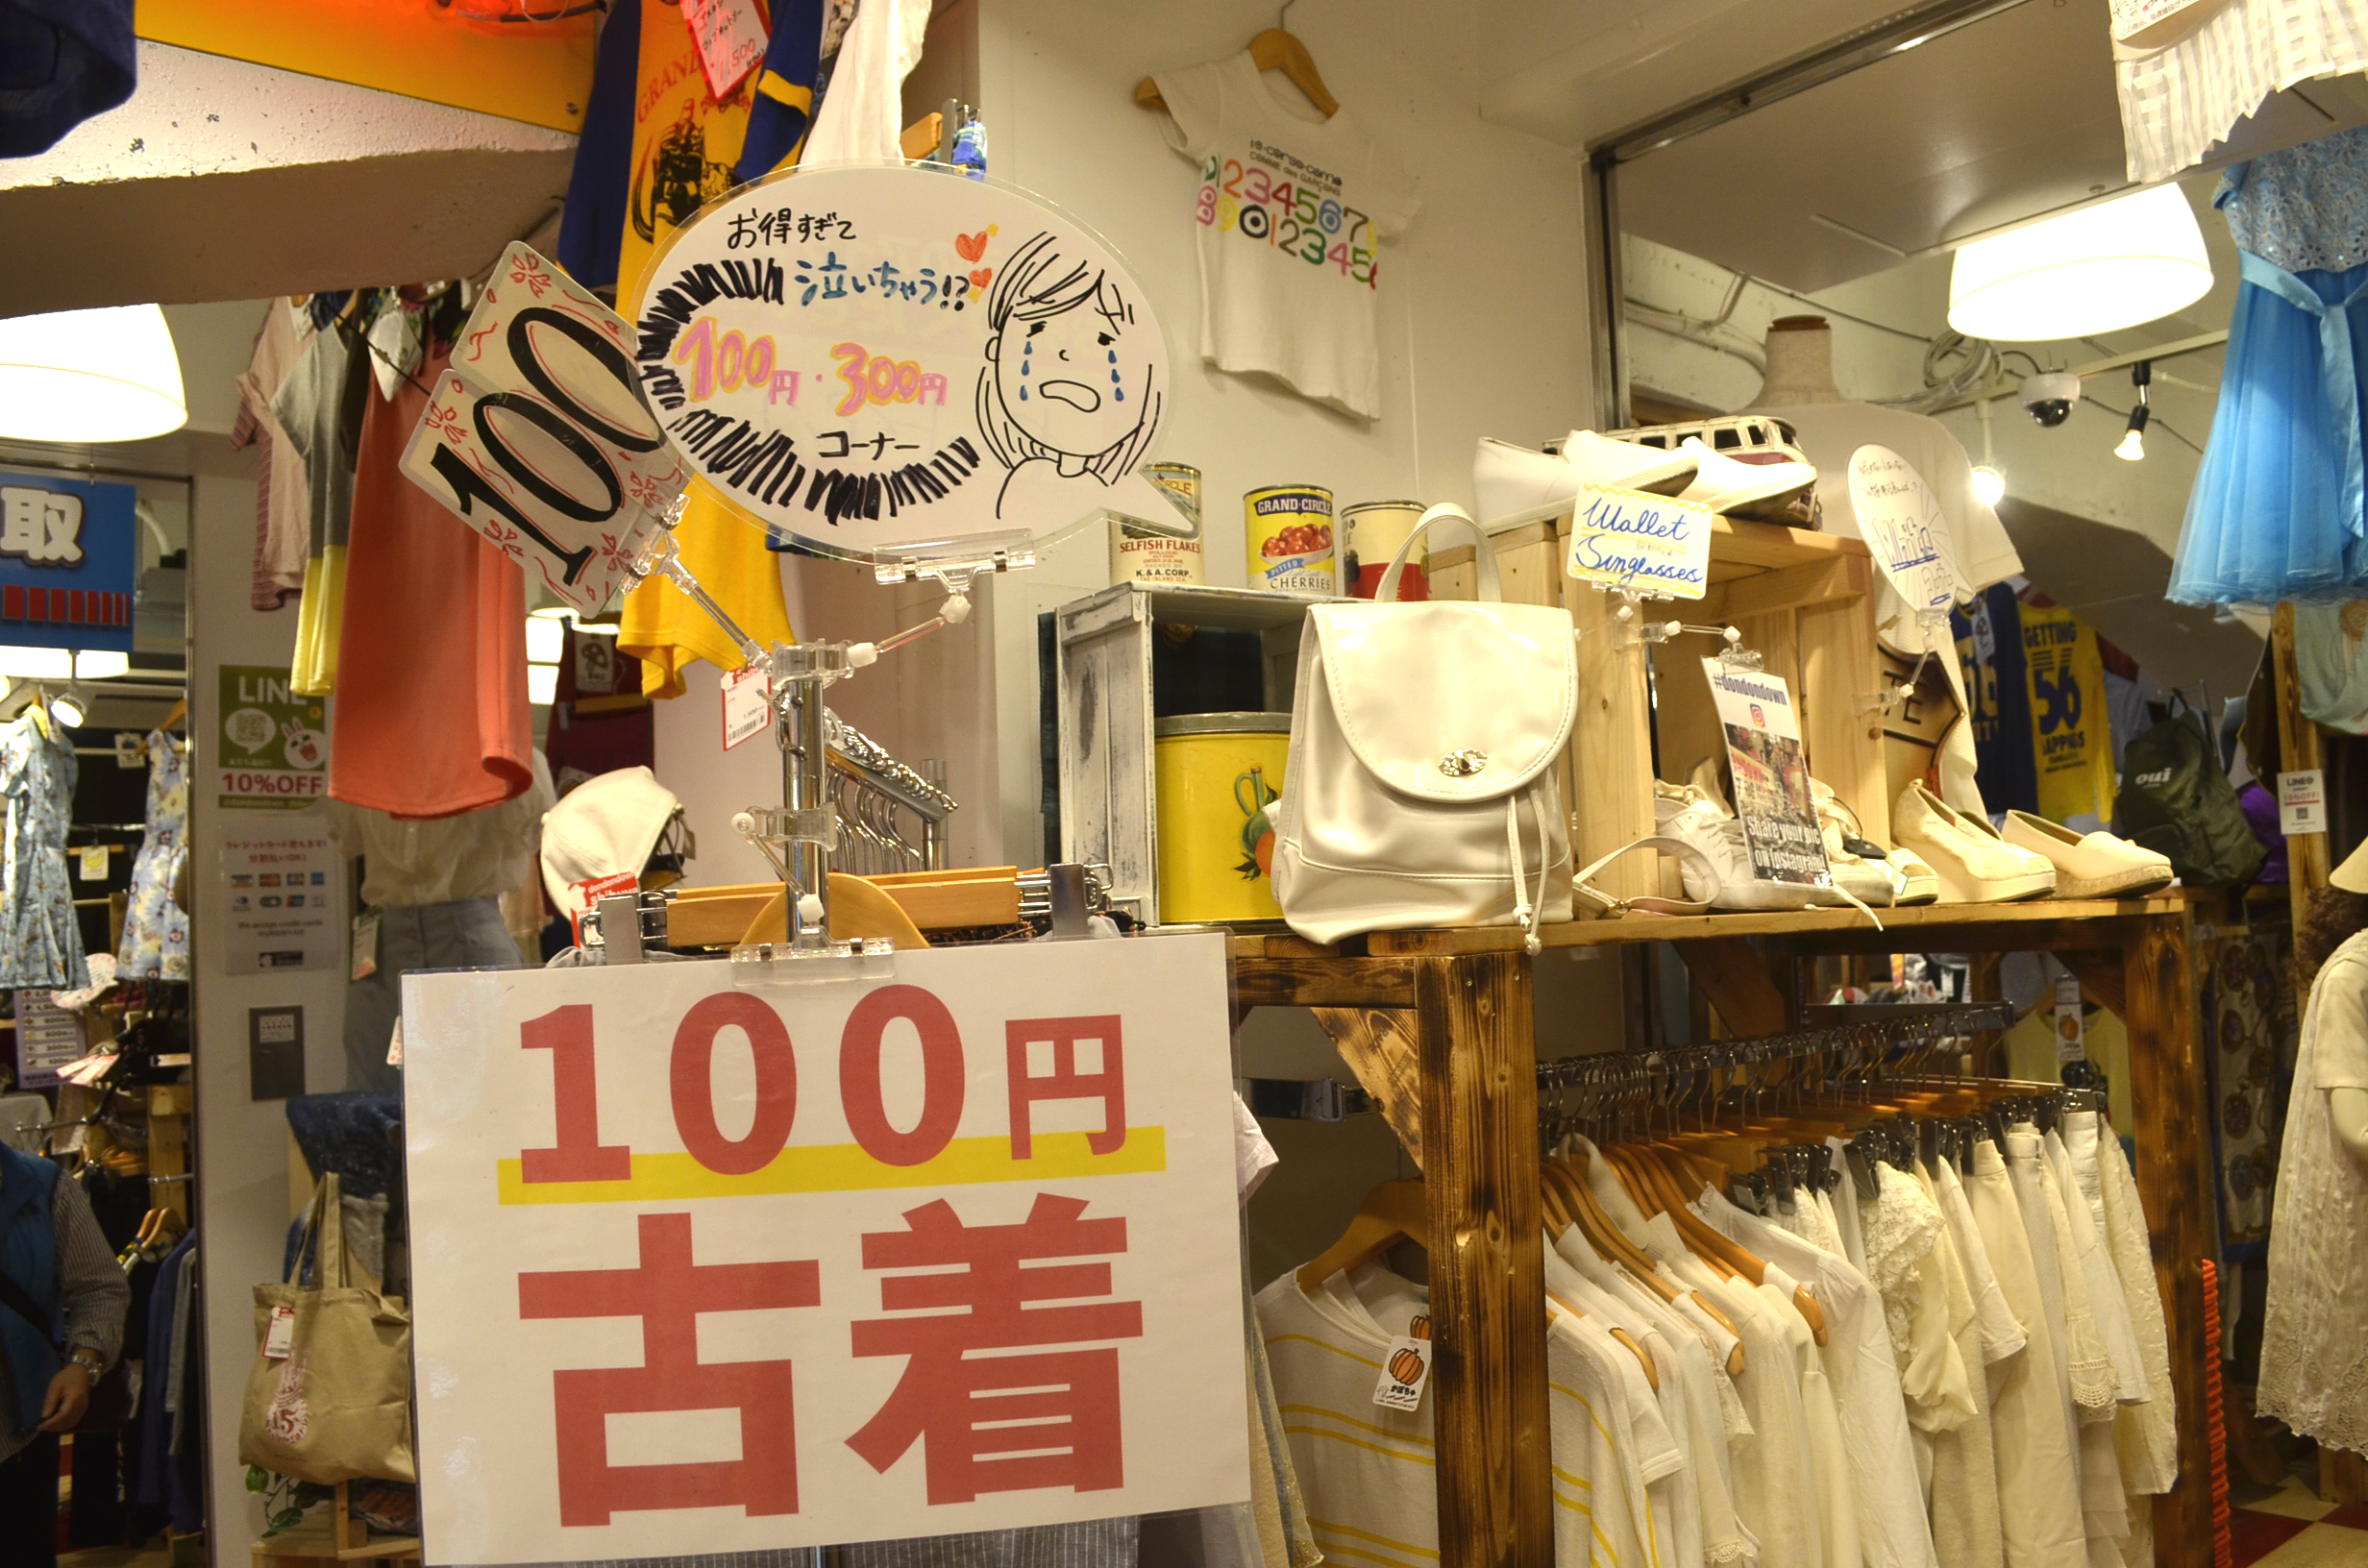 ベスト50 渋谷 メンズ ファッション 安い ファッショントレンドについて